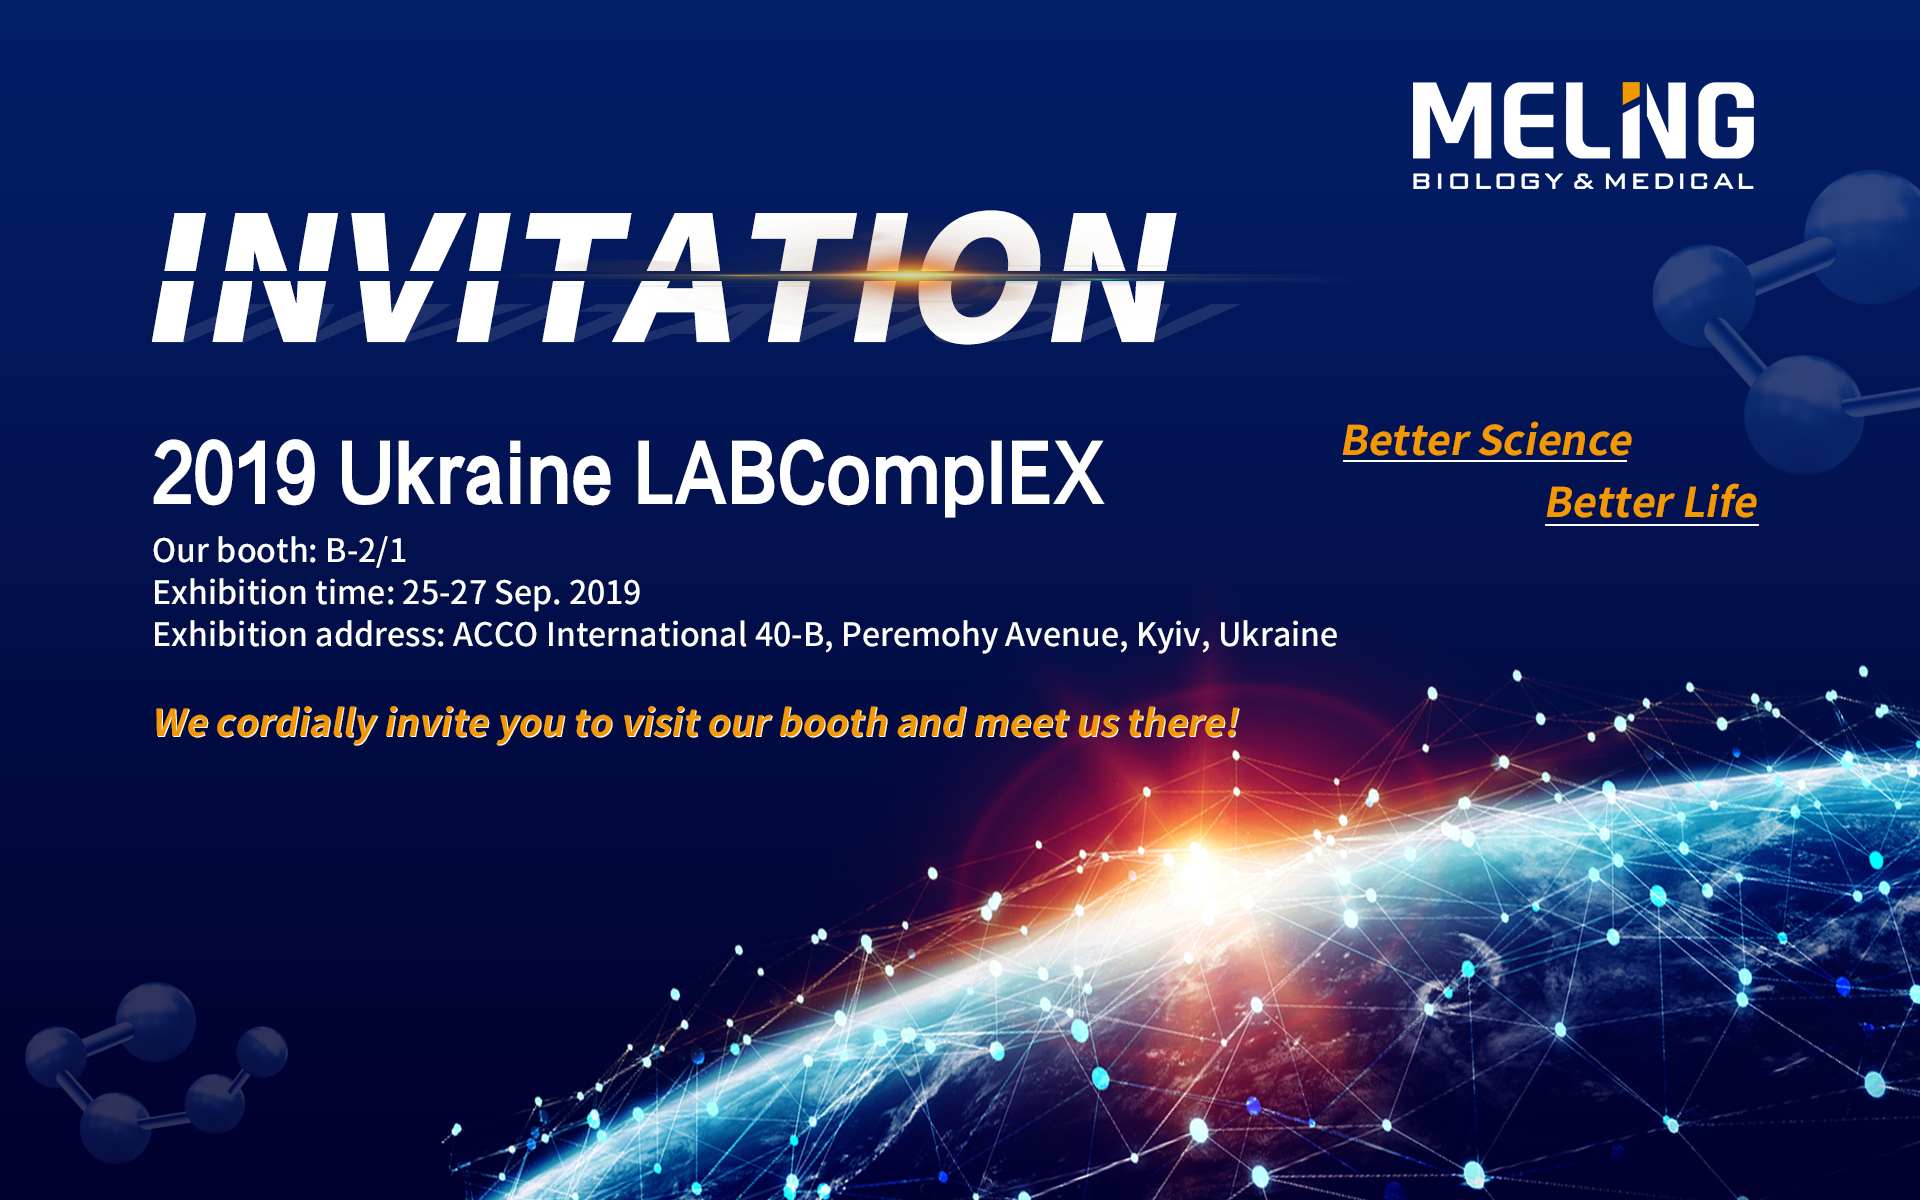 Les produits vedettes arrivent en 2019 Ukraine LABCompIEX
